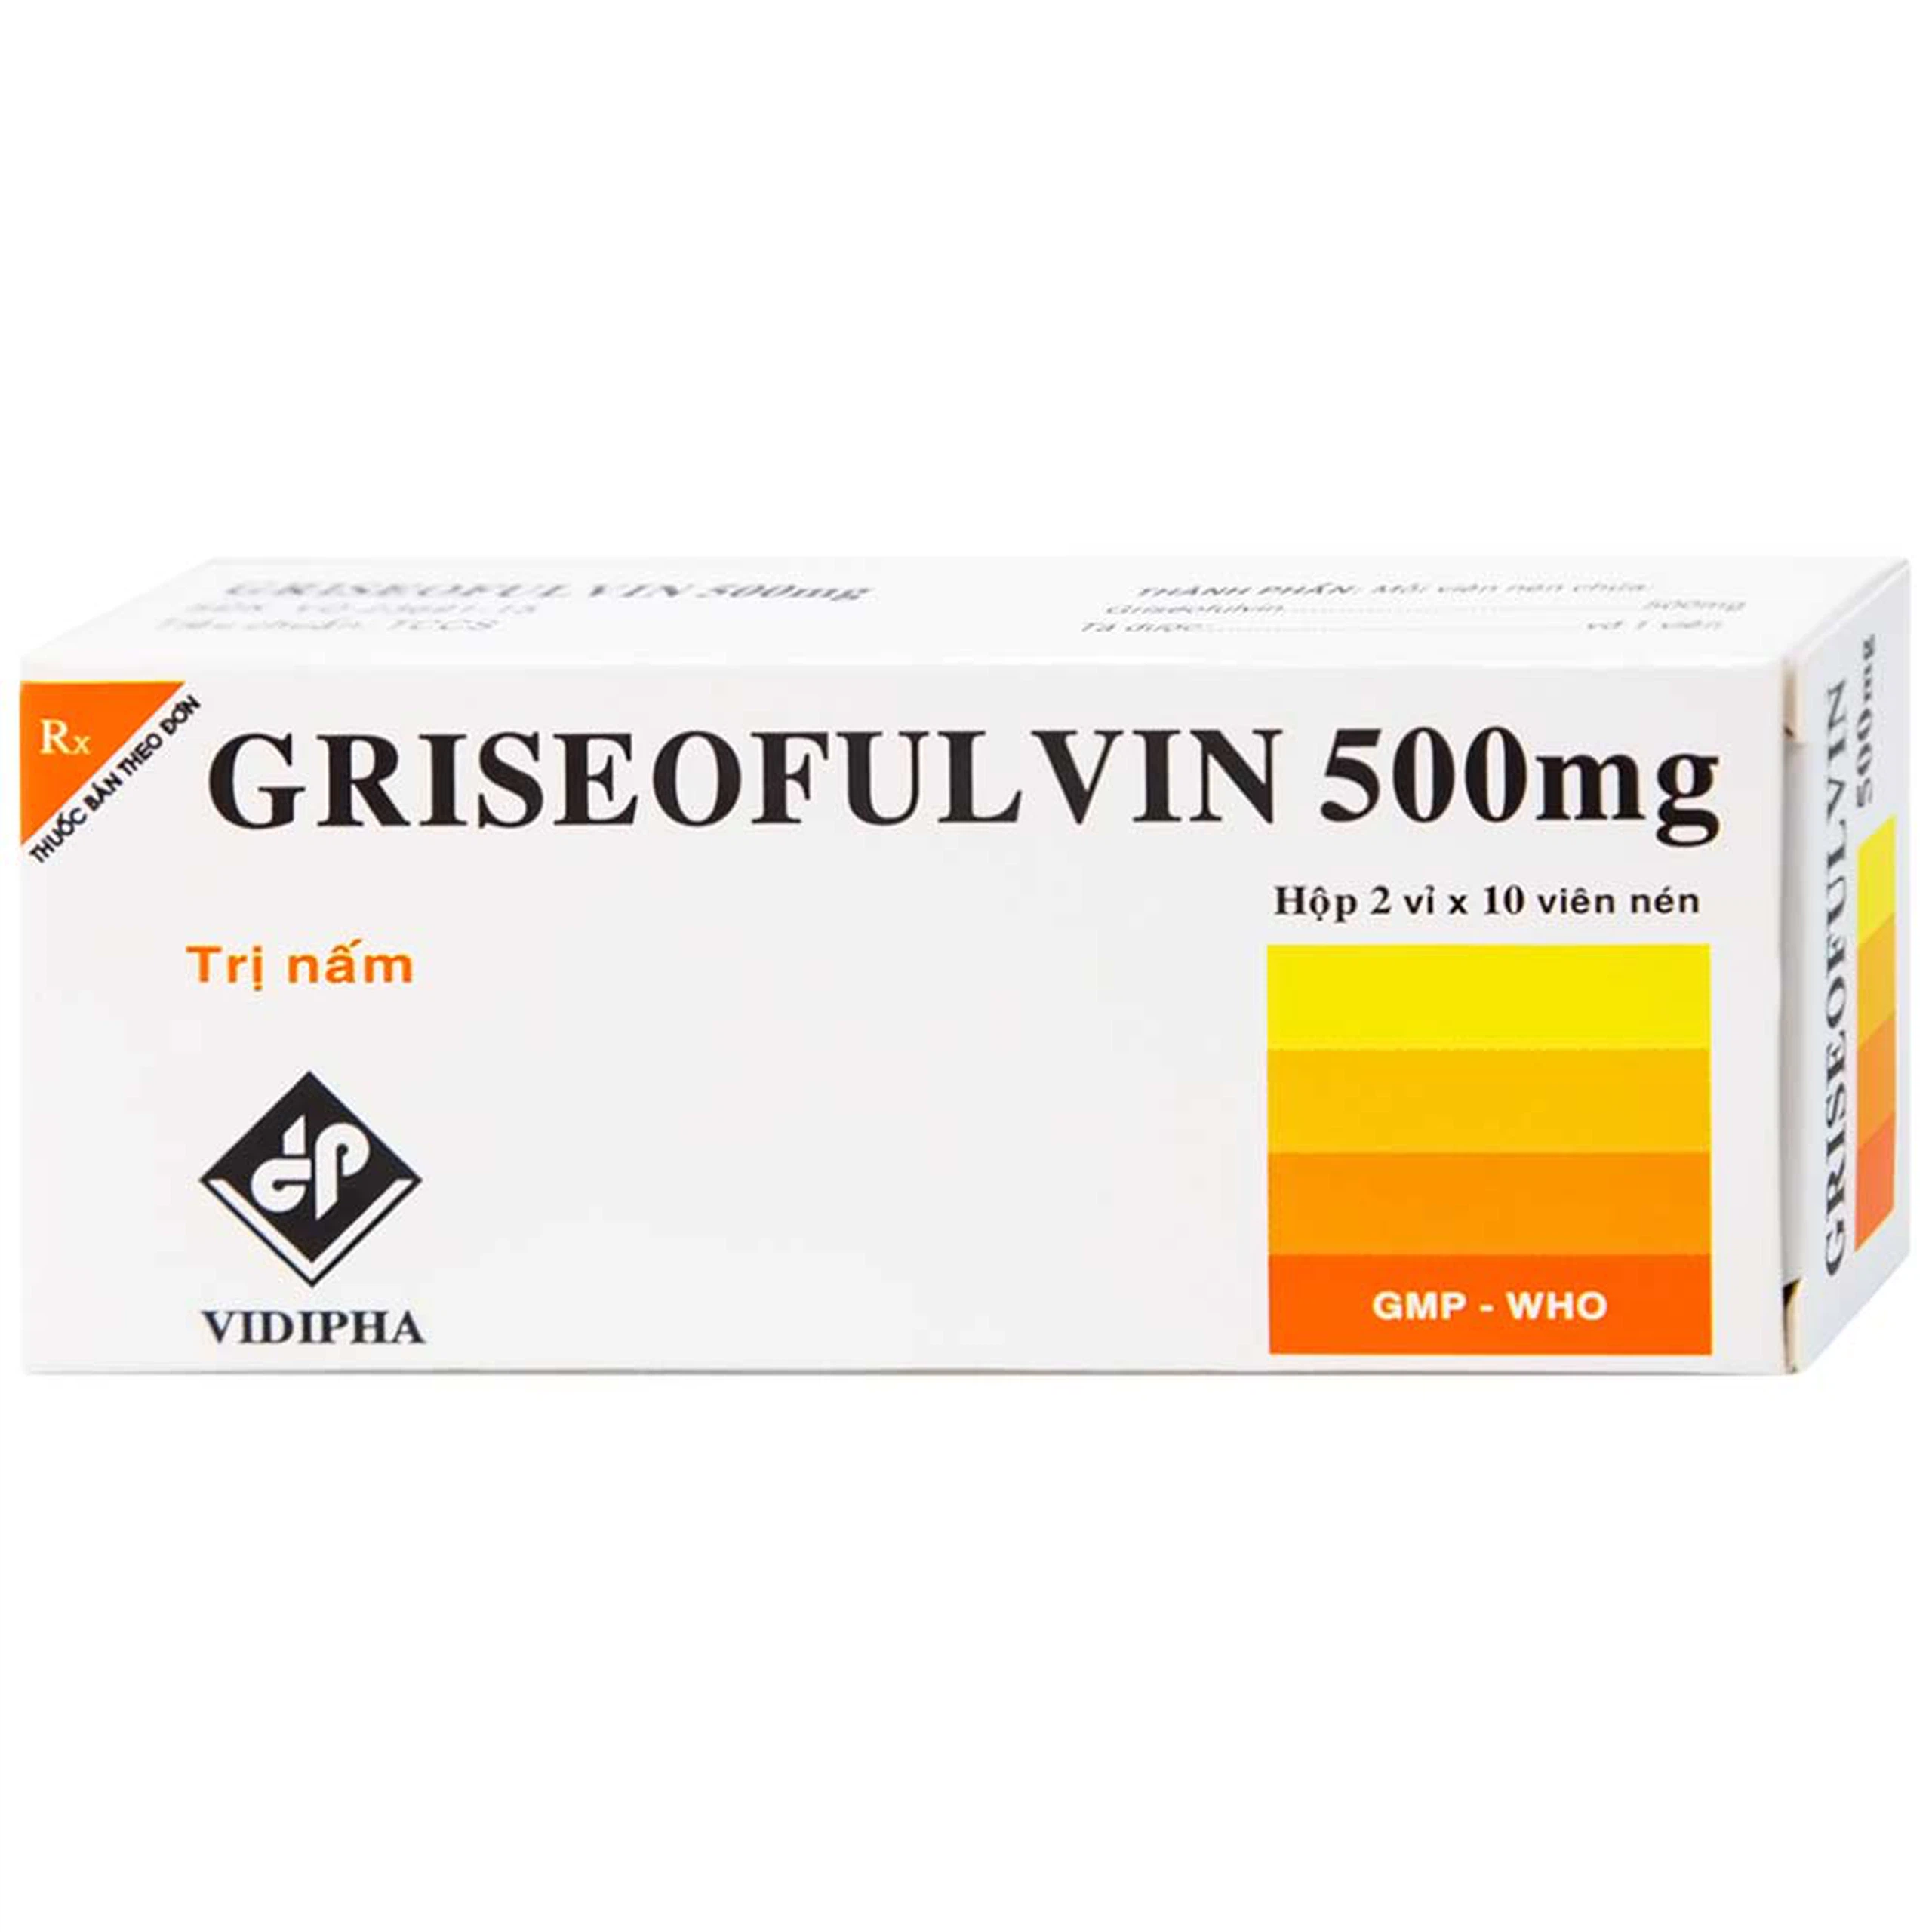 Thuốc Griseofulvin 500mg Vidipha điều trị các bệnh nấm da, tóc, lông, móng tay, móng chân (2 vỉ x 10 viên)